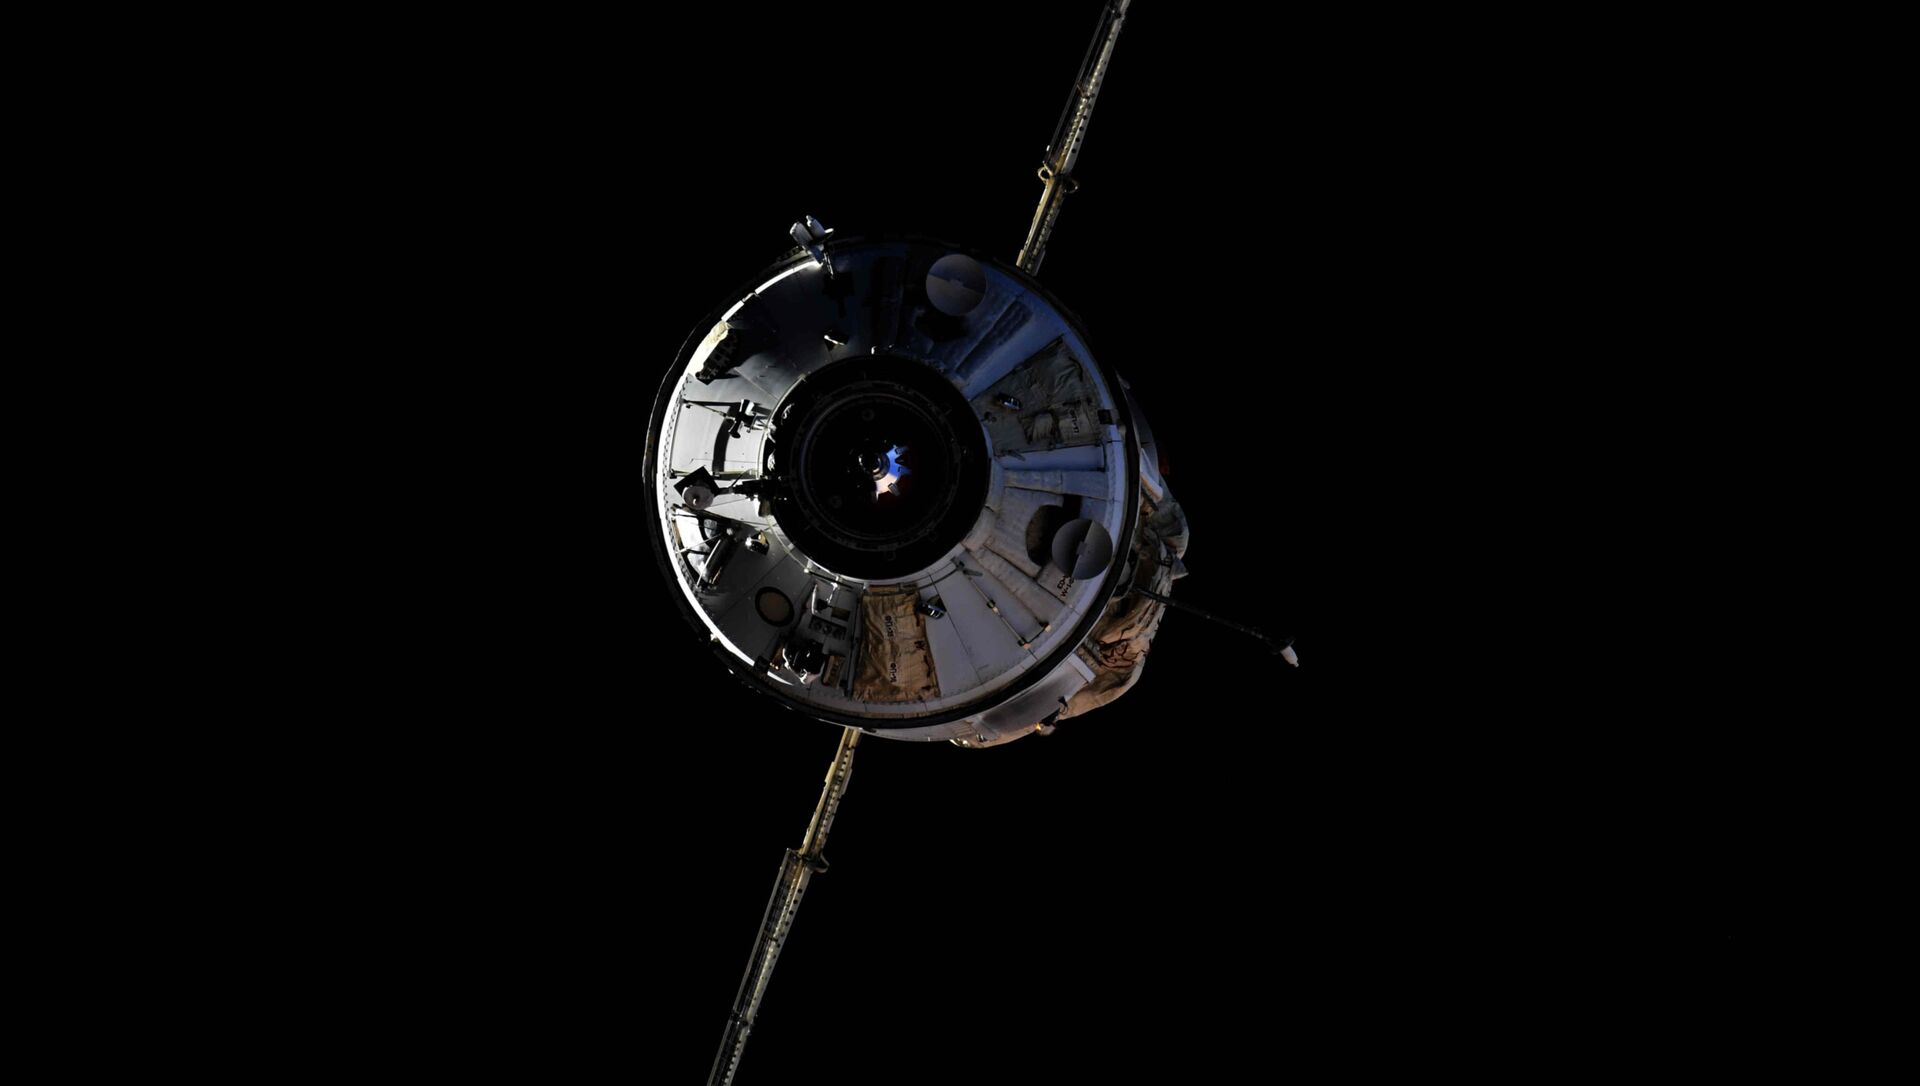 Le module scientifique russe Nauka s'arrime à l'ISS, le 29 juillet 2021 - Sputnik Afrique, 1920, 29.07.2021